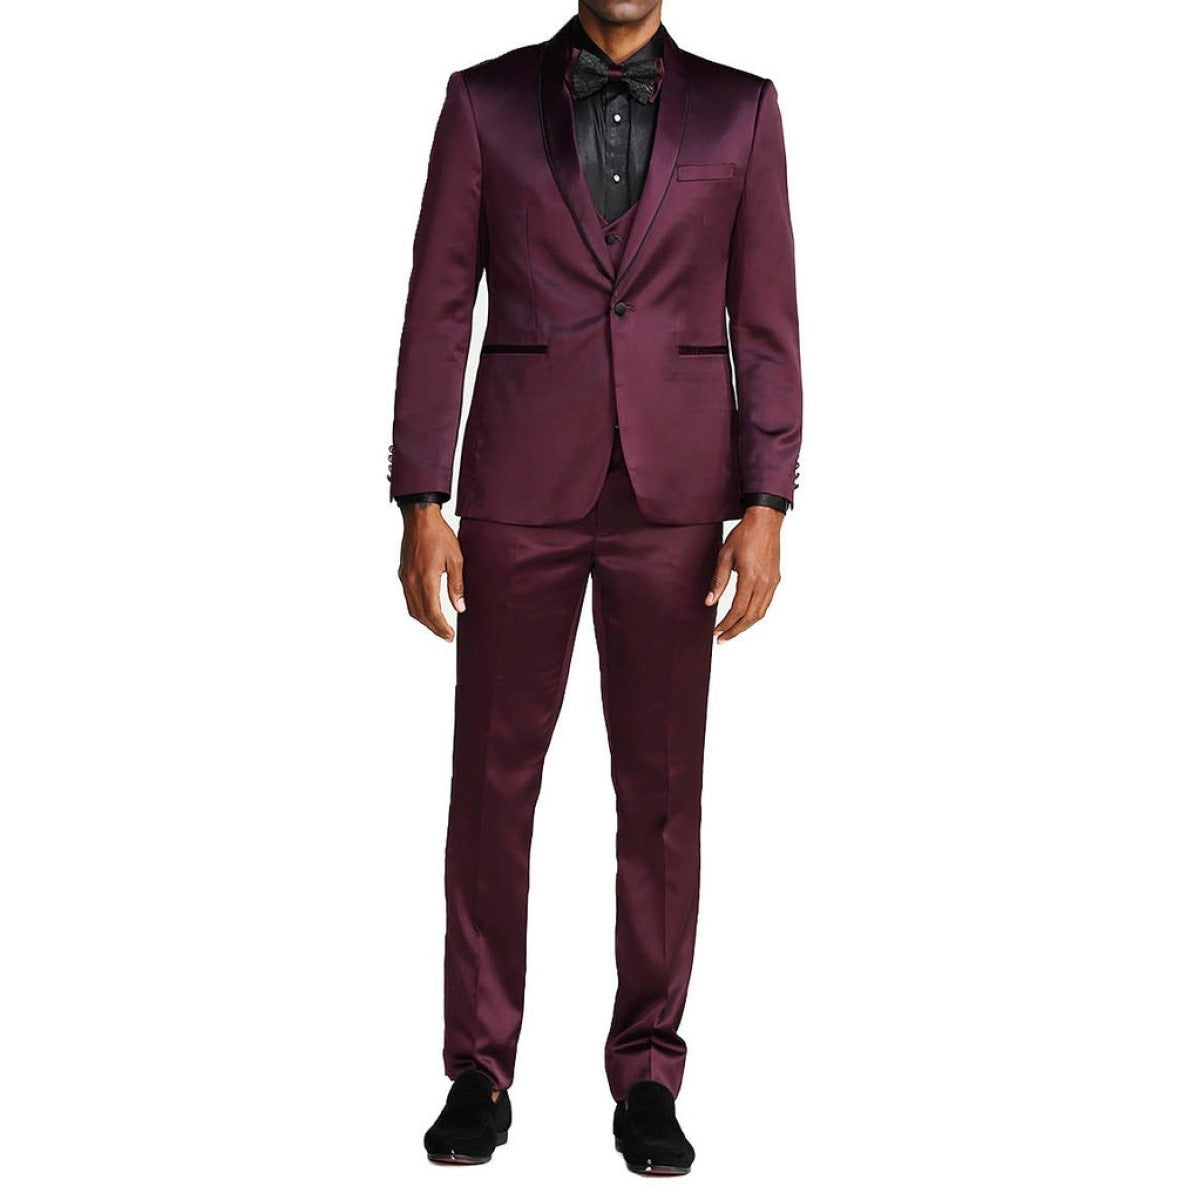 Traje Formal para Hombre TA-M288SK-02 - Formal Suit for Men